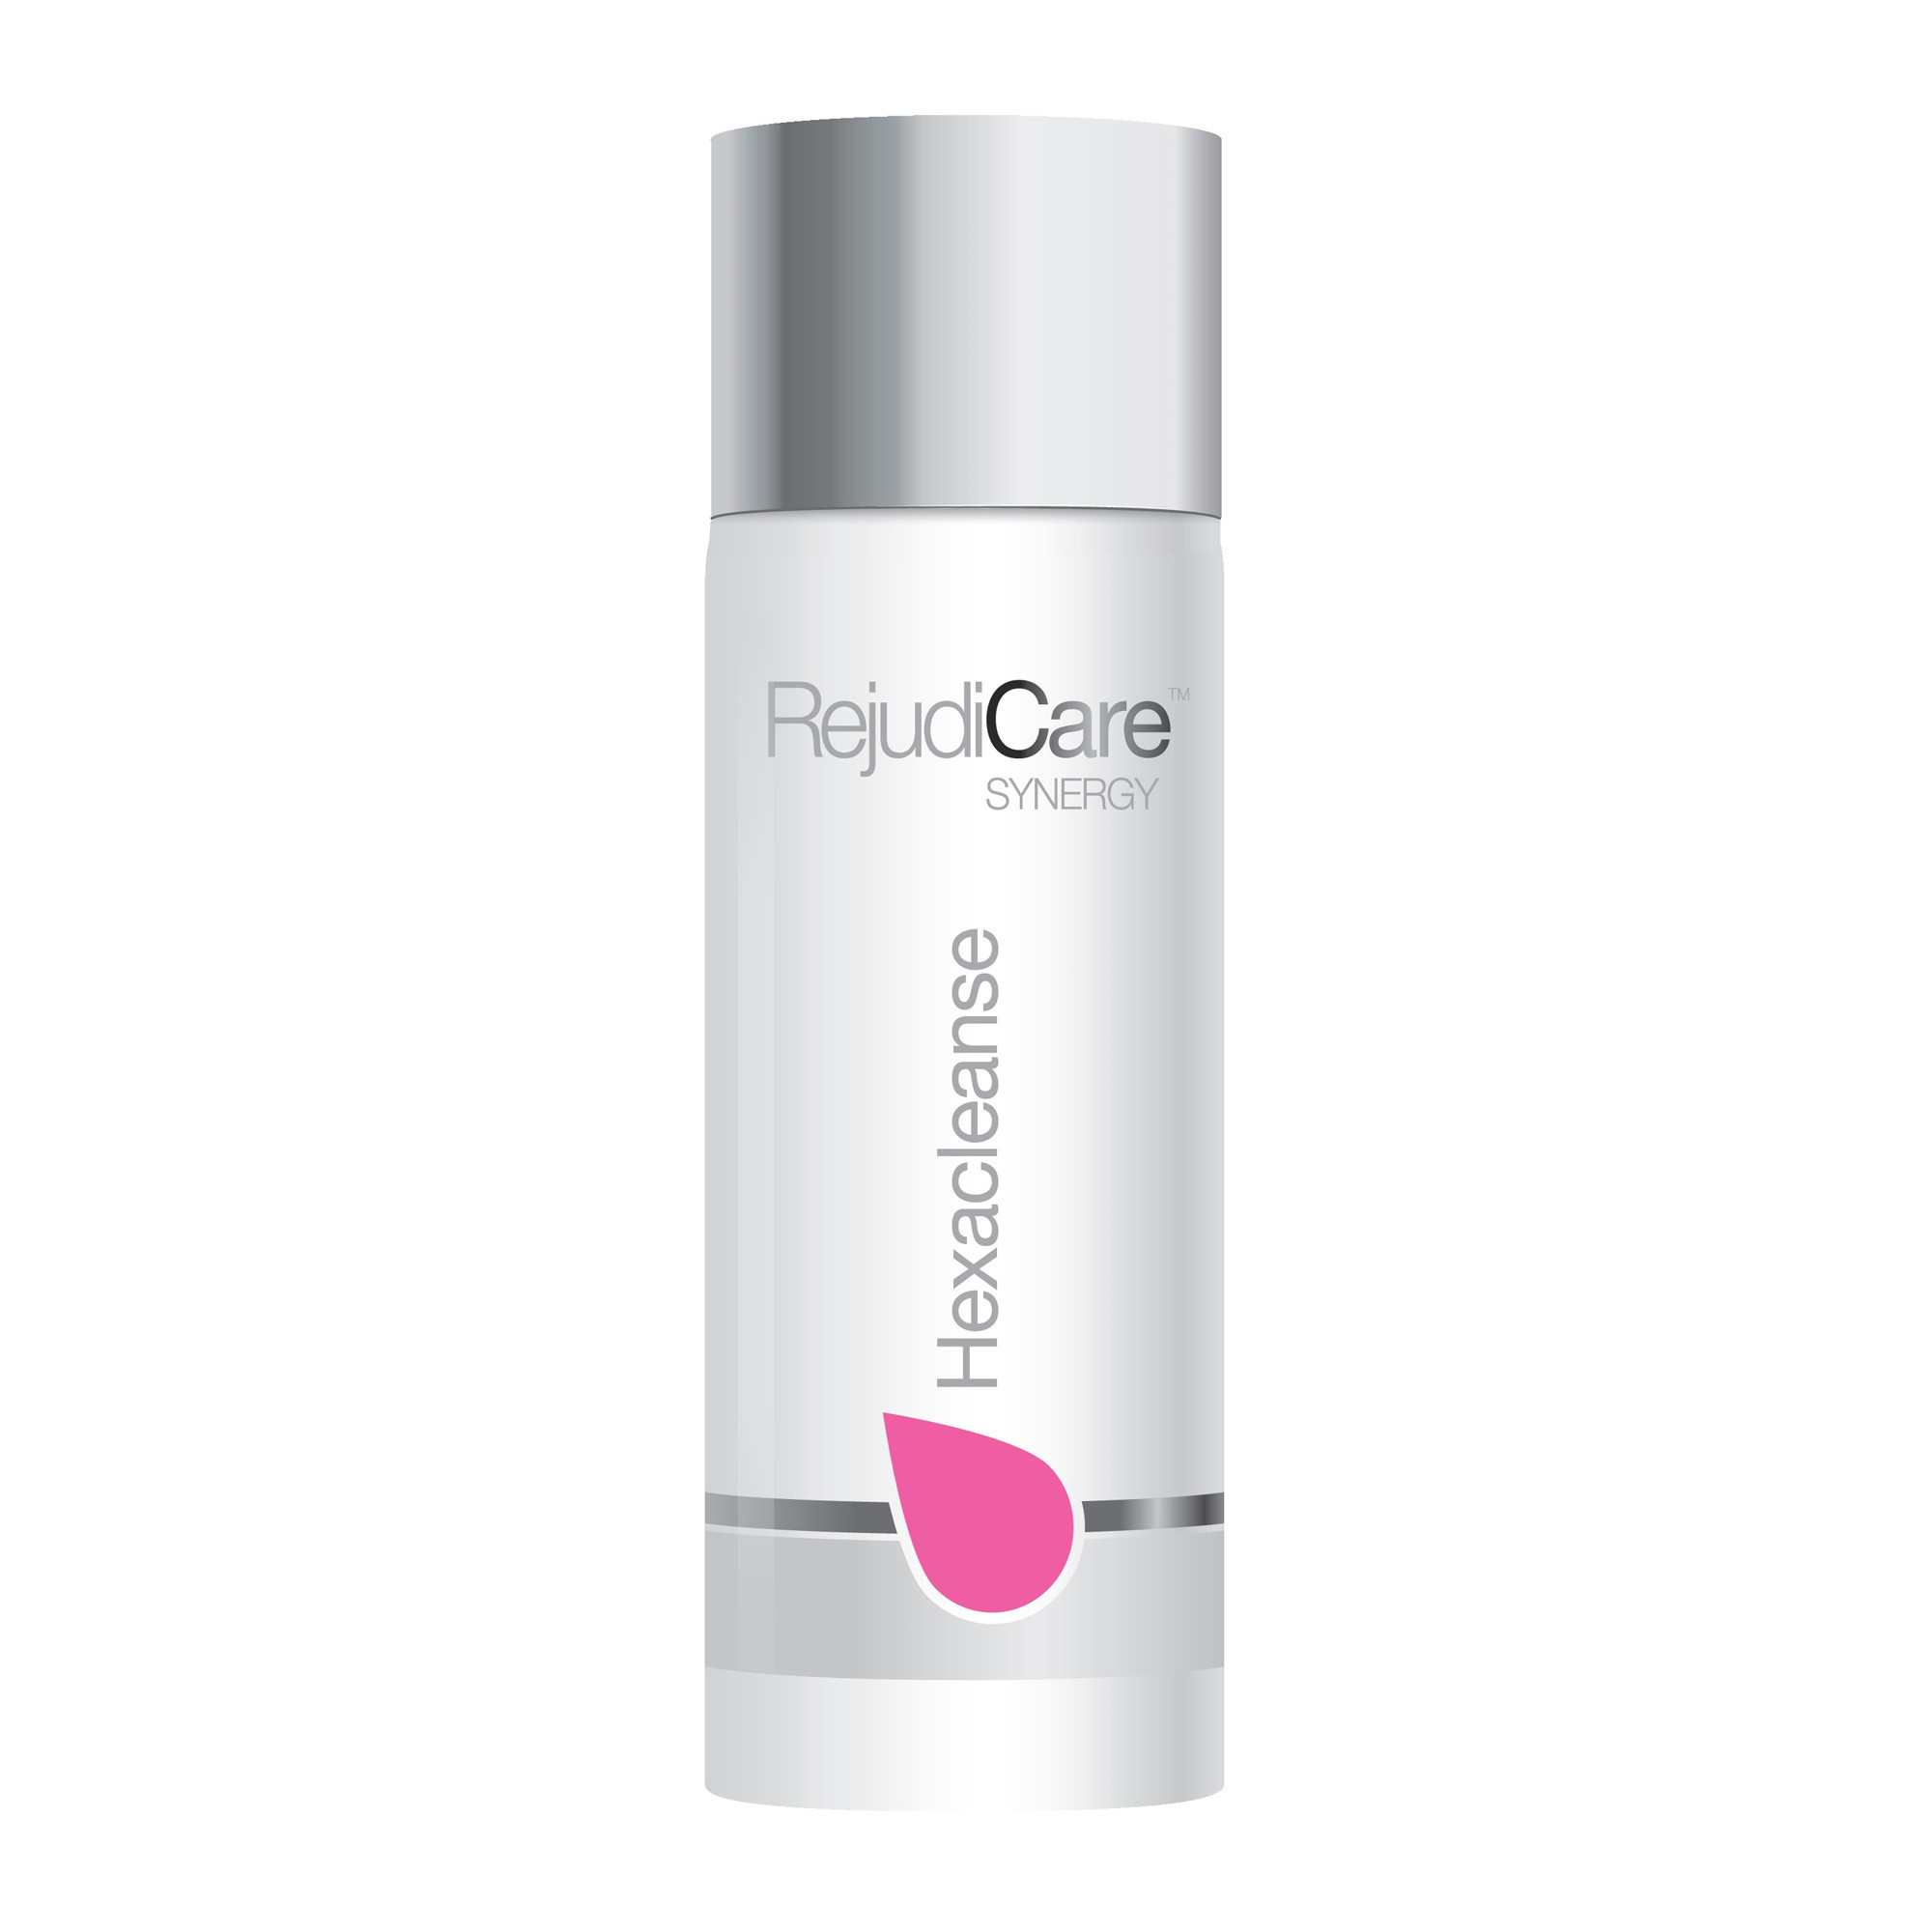 RejudiCare Hexacleanse - Очищающий гель для чувствительной кожи лица